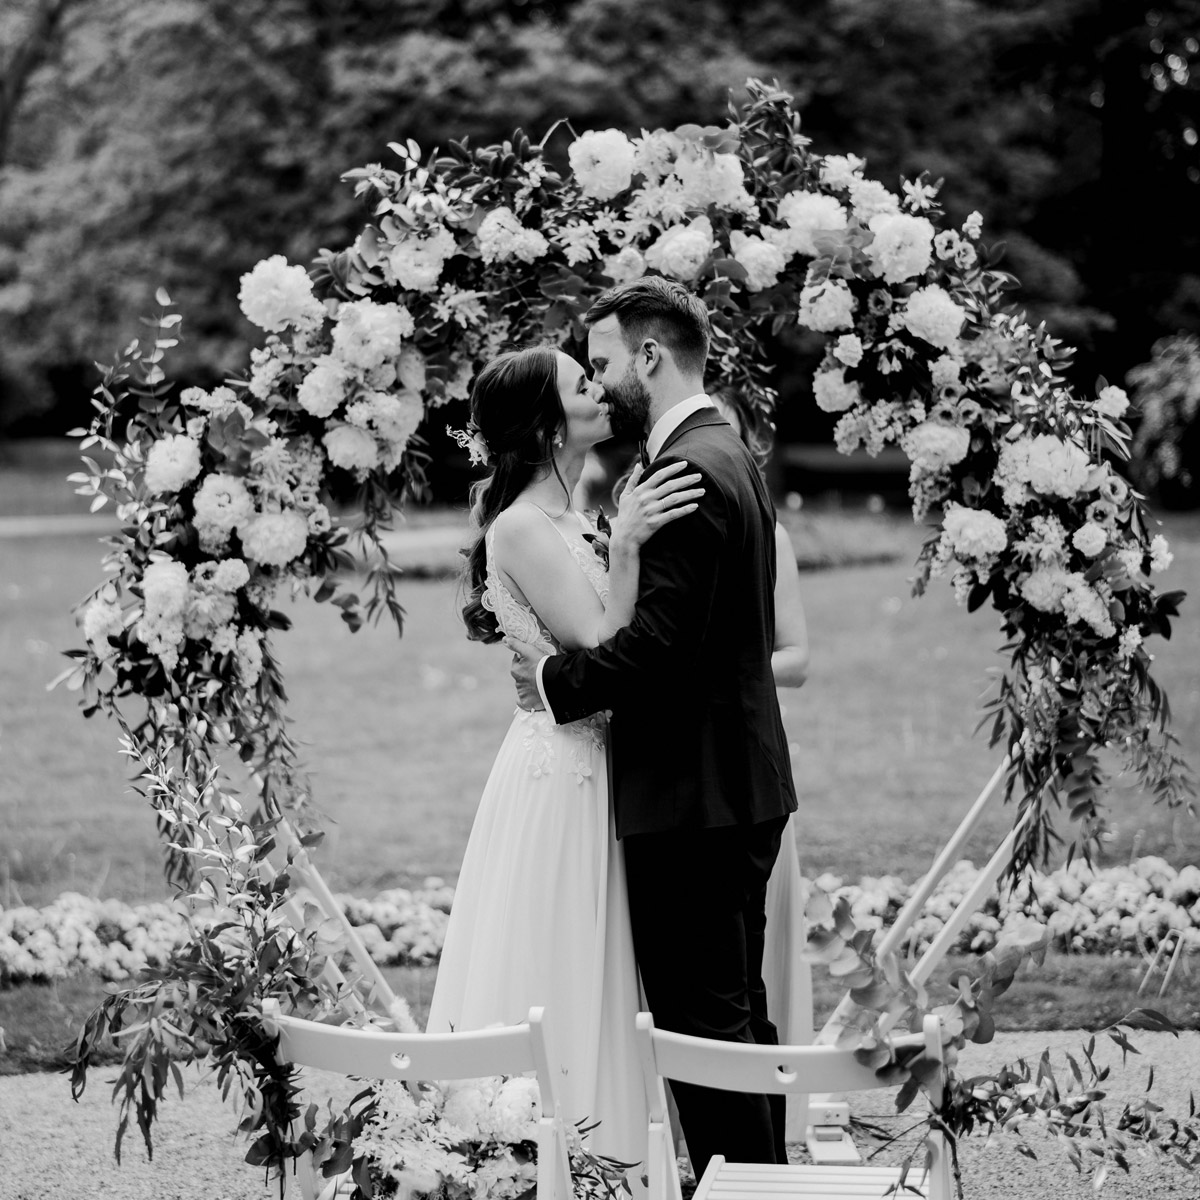 Verliebtes Ehepaar küsst sich unter Blumenbogen bei freier Trauung im Schlosspark Britz in Berlin - die Hochzeit endete im Regen - Hochzeitsreportage im Hochzeitsblog © www.hochzeitslicht.de #hochzeitslicht